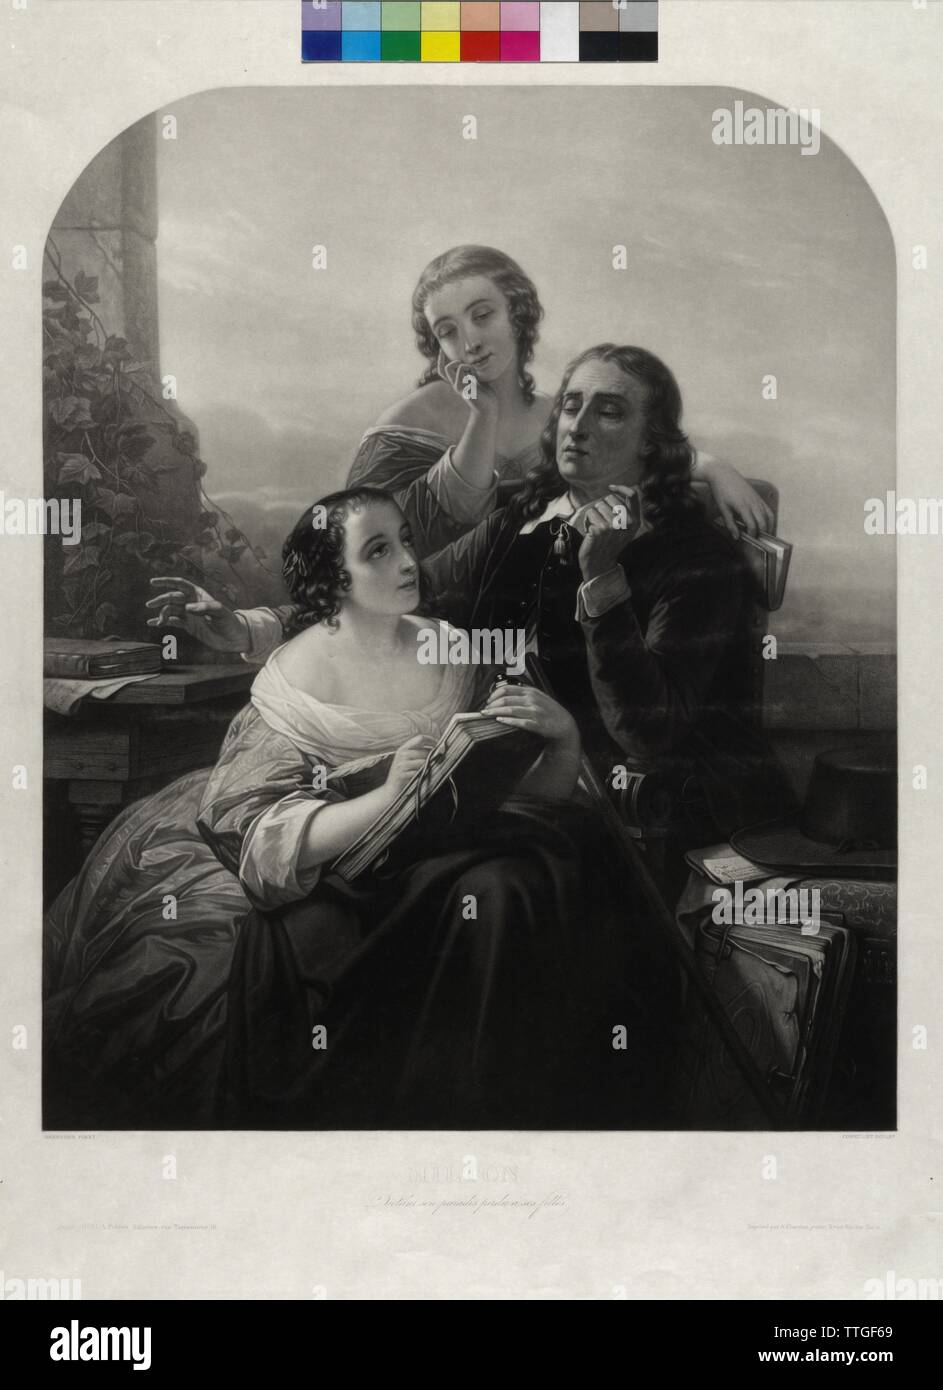 Milton, John, Milton diktiert seine Töchter das "verlorene Paradies", schabkunst von Alfred Cornilliet auf einem Gemälde von Nicaise de Keyser, Additional-Rights - Clearance-Info - Not-Available Stockfoto